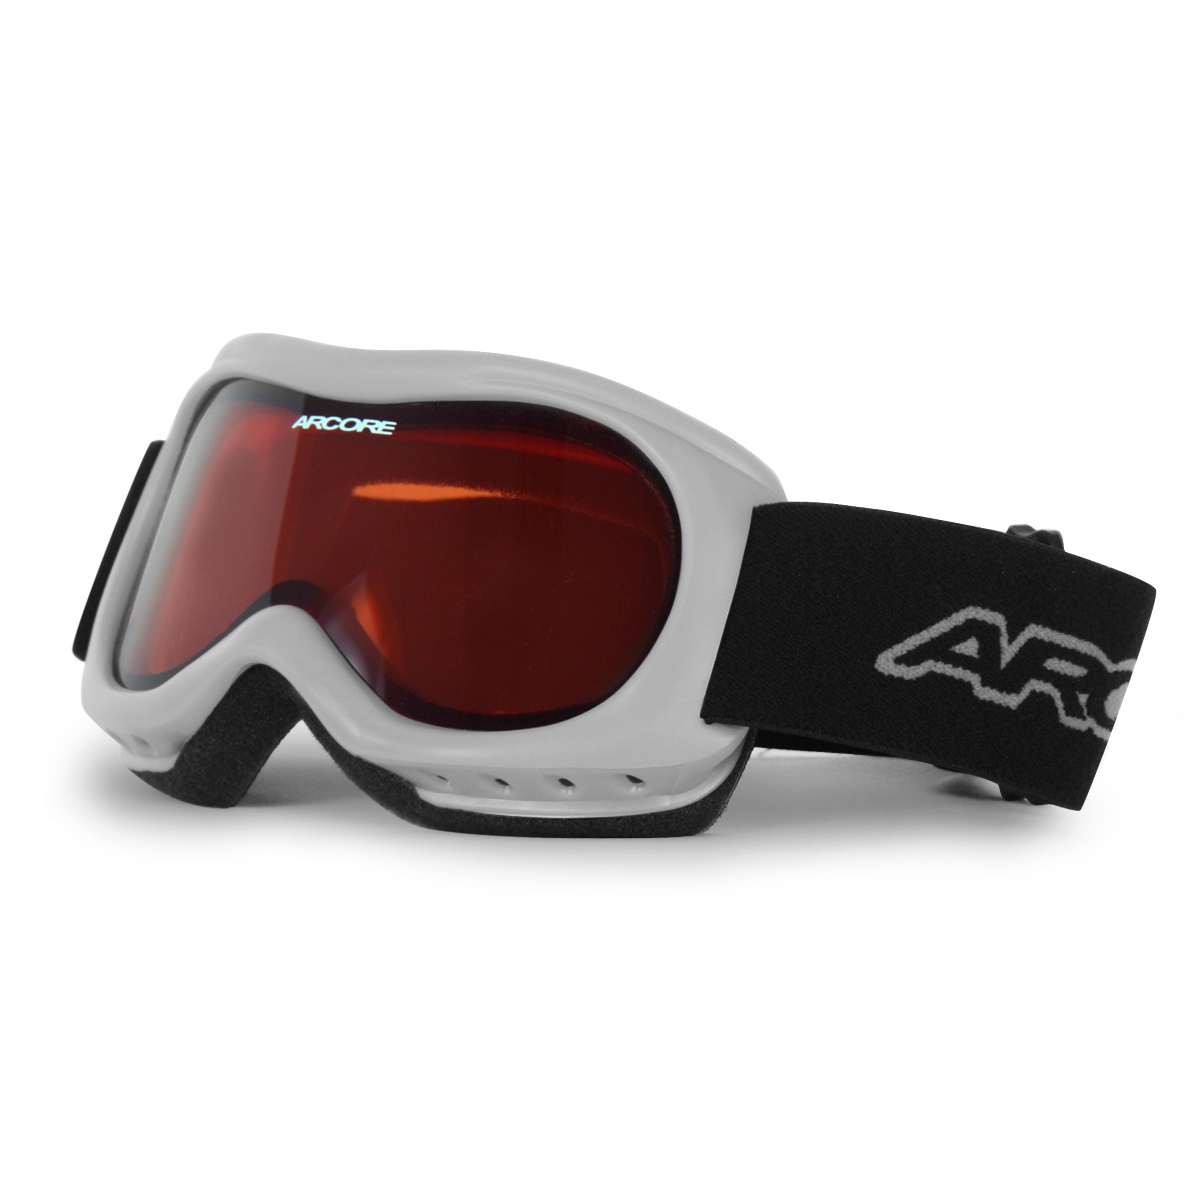 J200-3 - Dětské lyžařské brýle